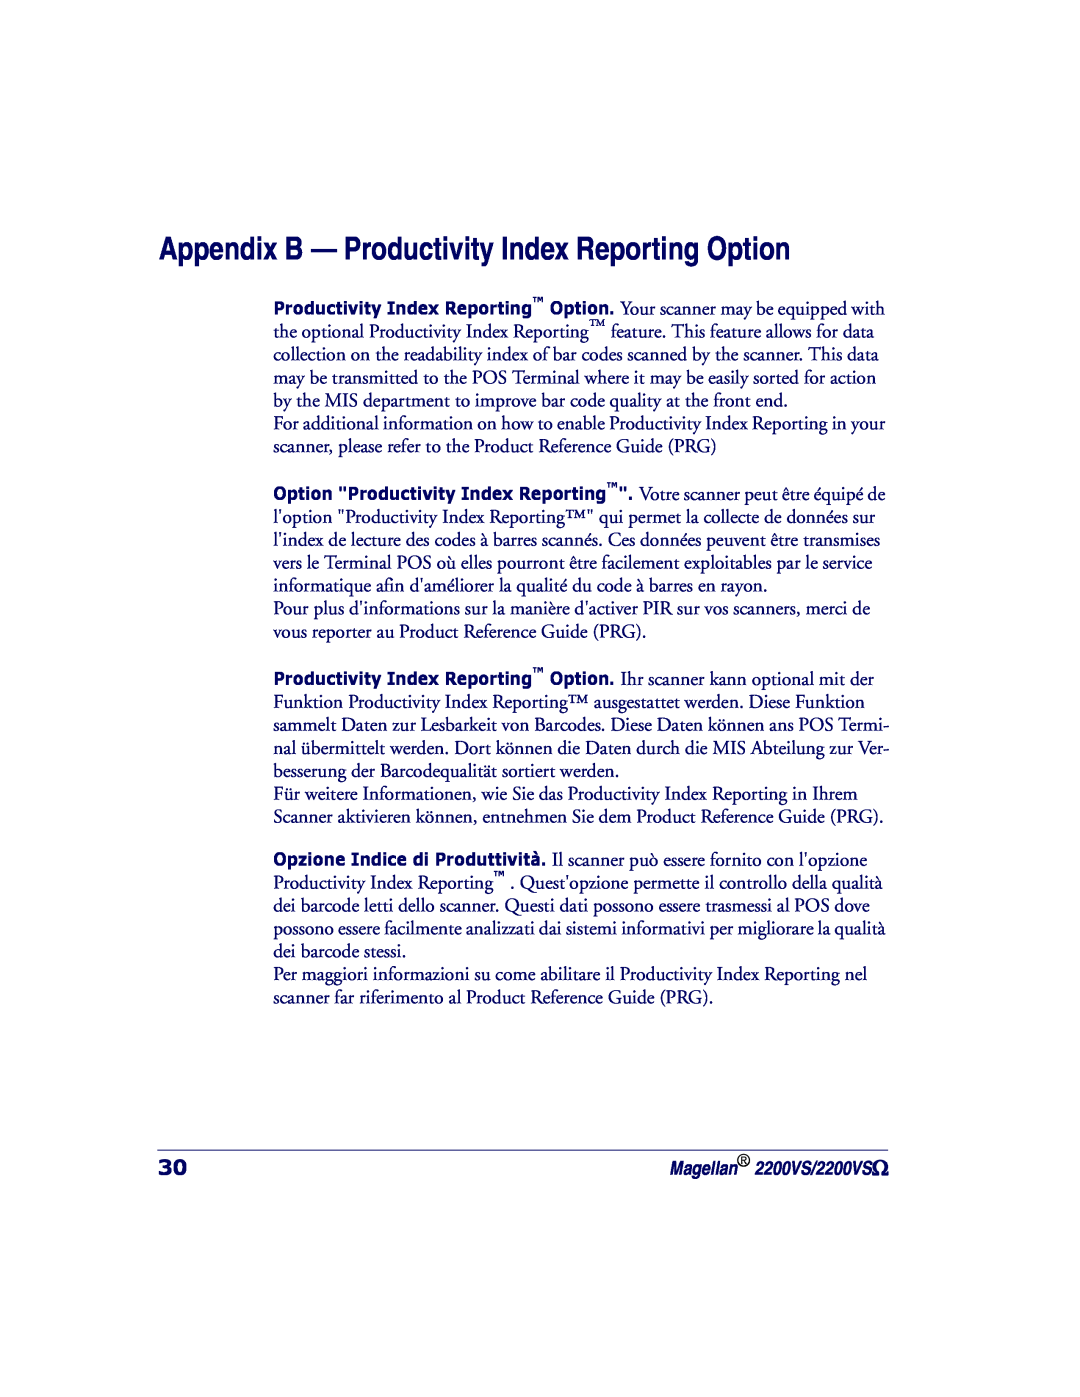 PSC 2200VS manual Appendix B - Productivity Index Reporting Option 